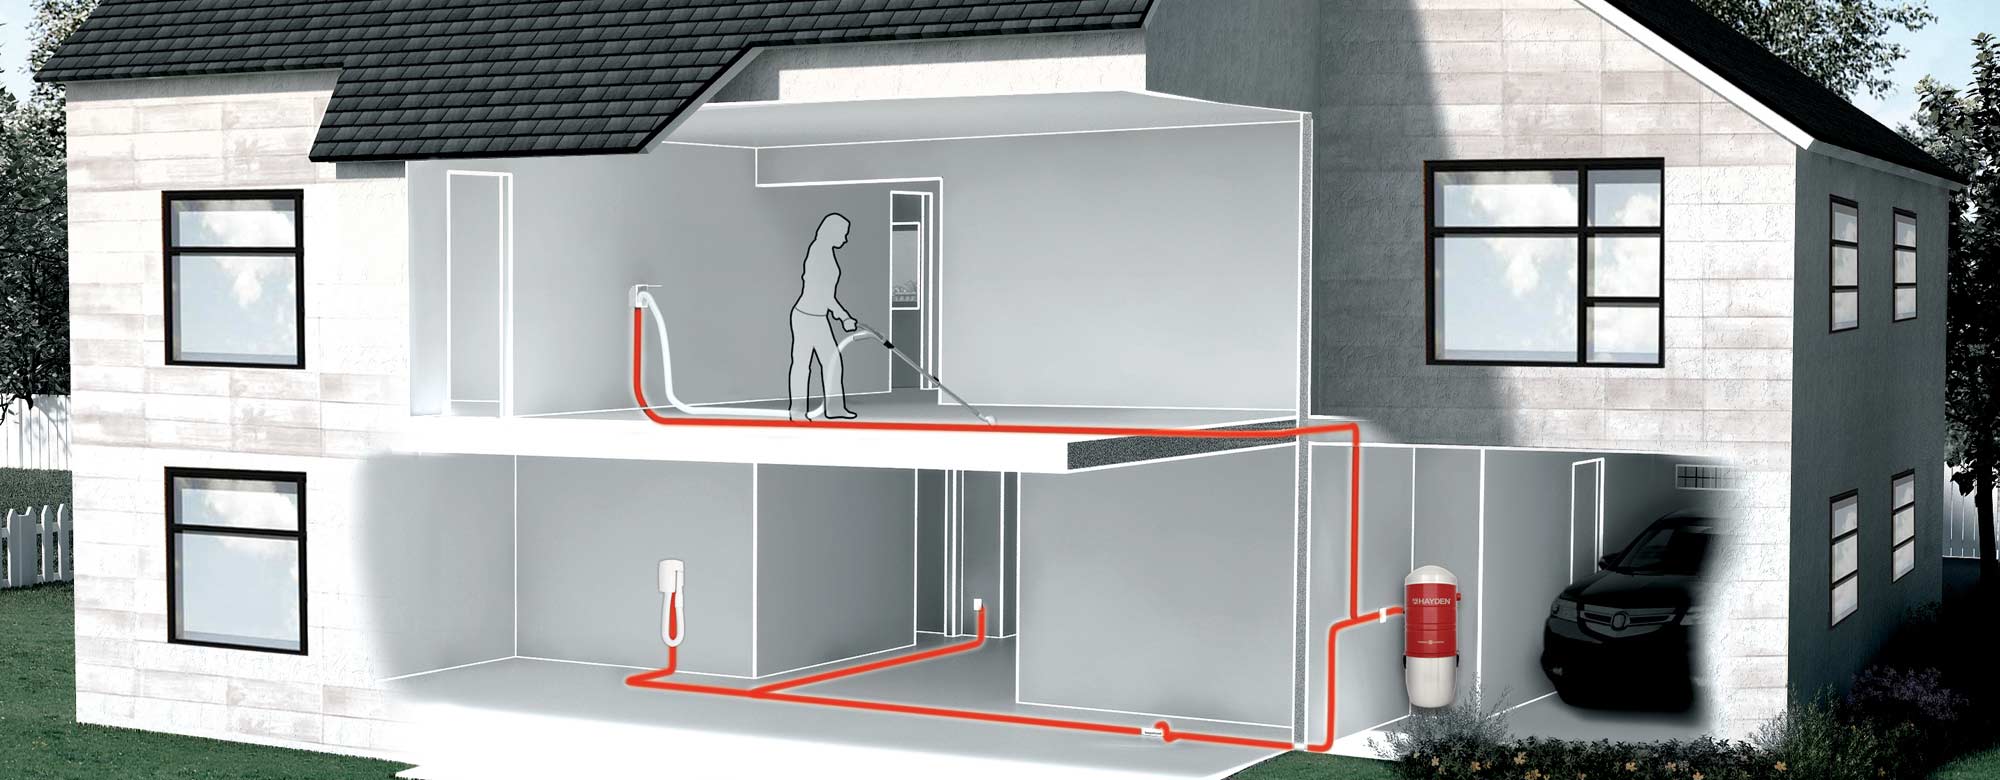 schéma du réseau d'une installation de système d'aspirateur central dans une maison